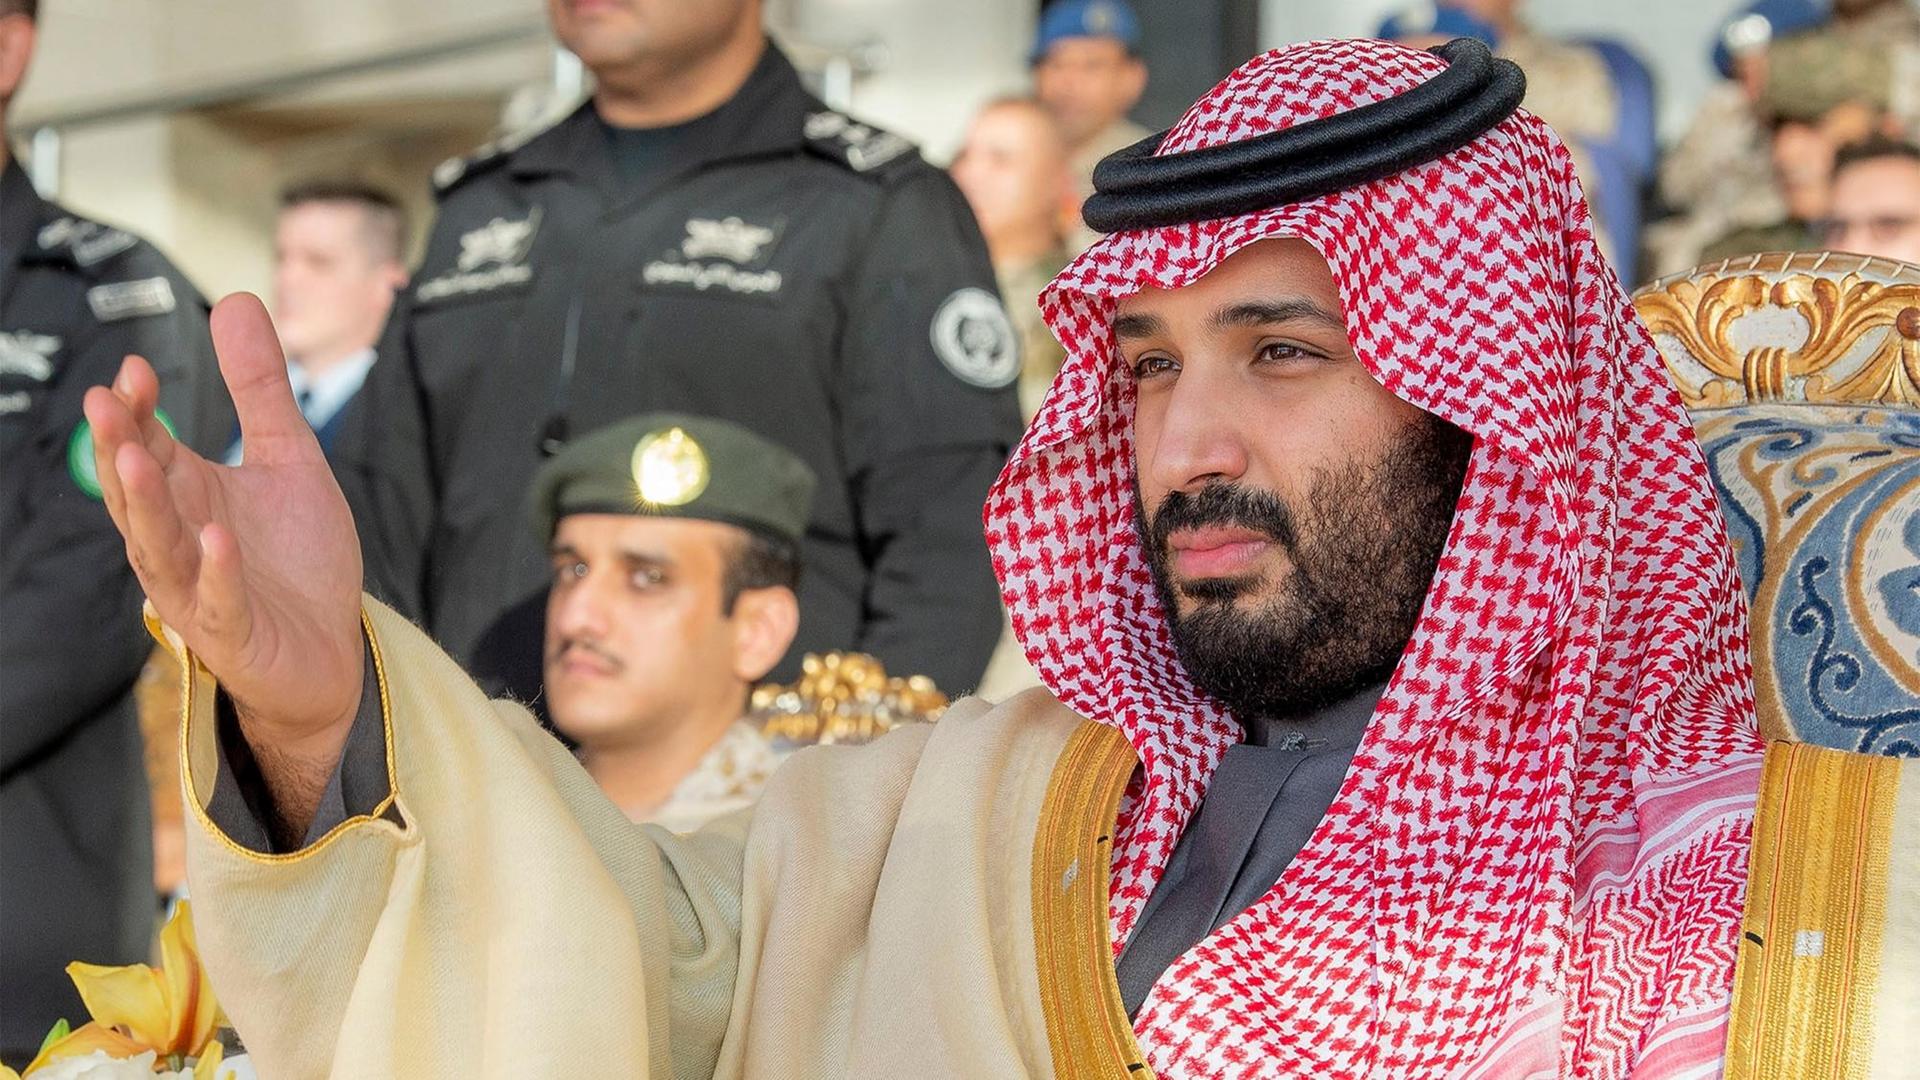 Saudi-Arabien - Kronprinz bin Salman zum Ministerpräsidenten ernannt